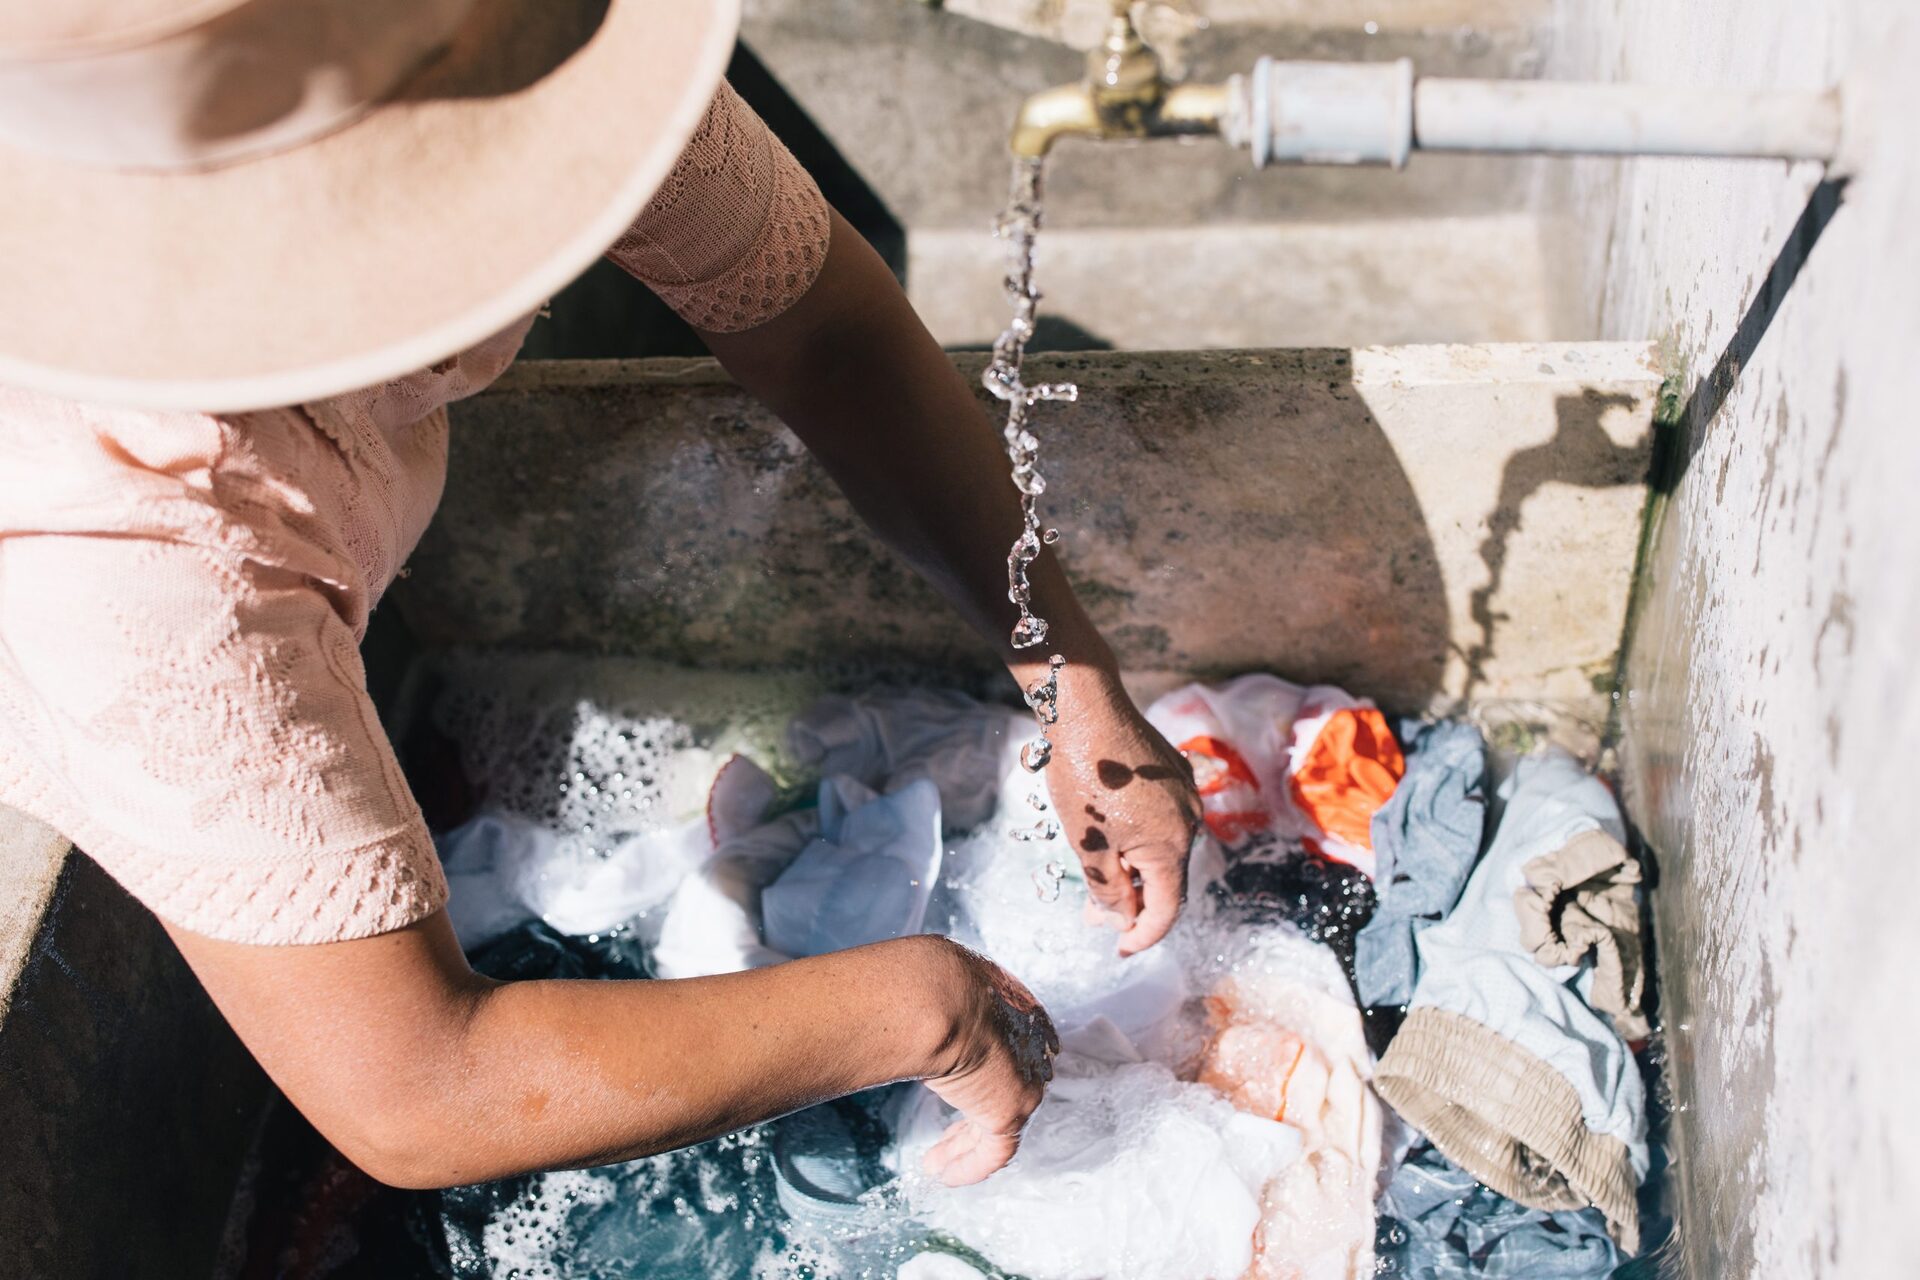 Uma das ações deste ano do projeto Banheiros Mudam Vidas está na parceria com a Water.org, que oferecerá microcrédito para famílias brasileiras em situação de vulnerabilidade social para construir seus próprios banheiros